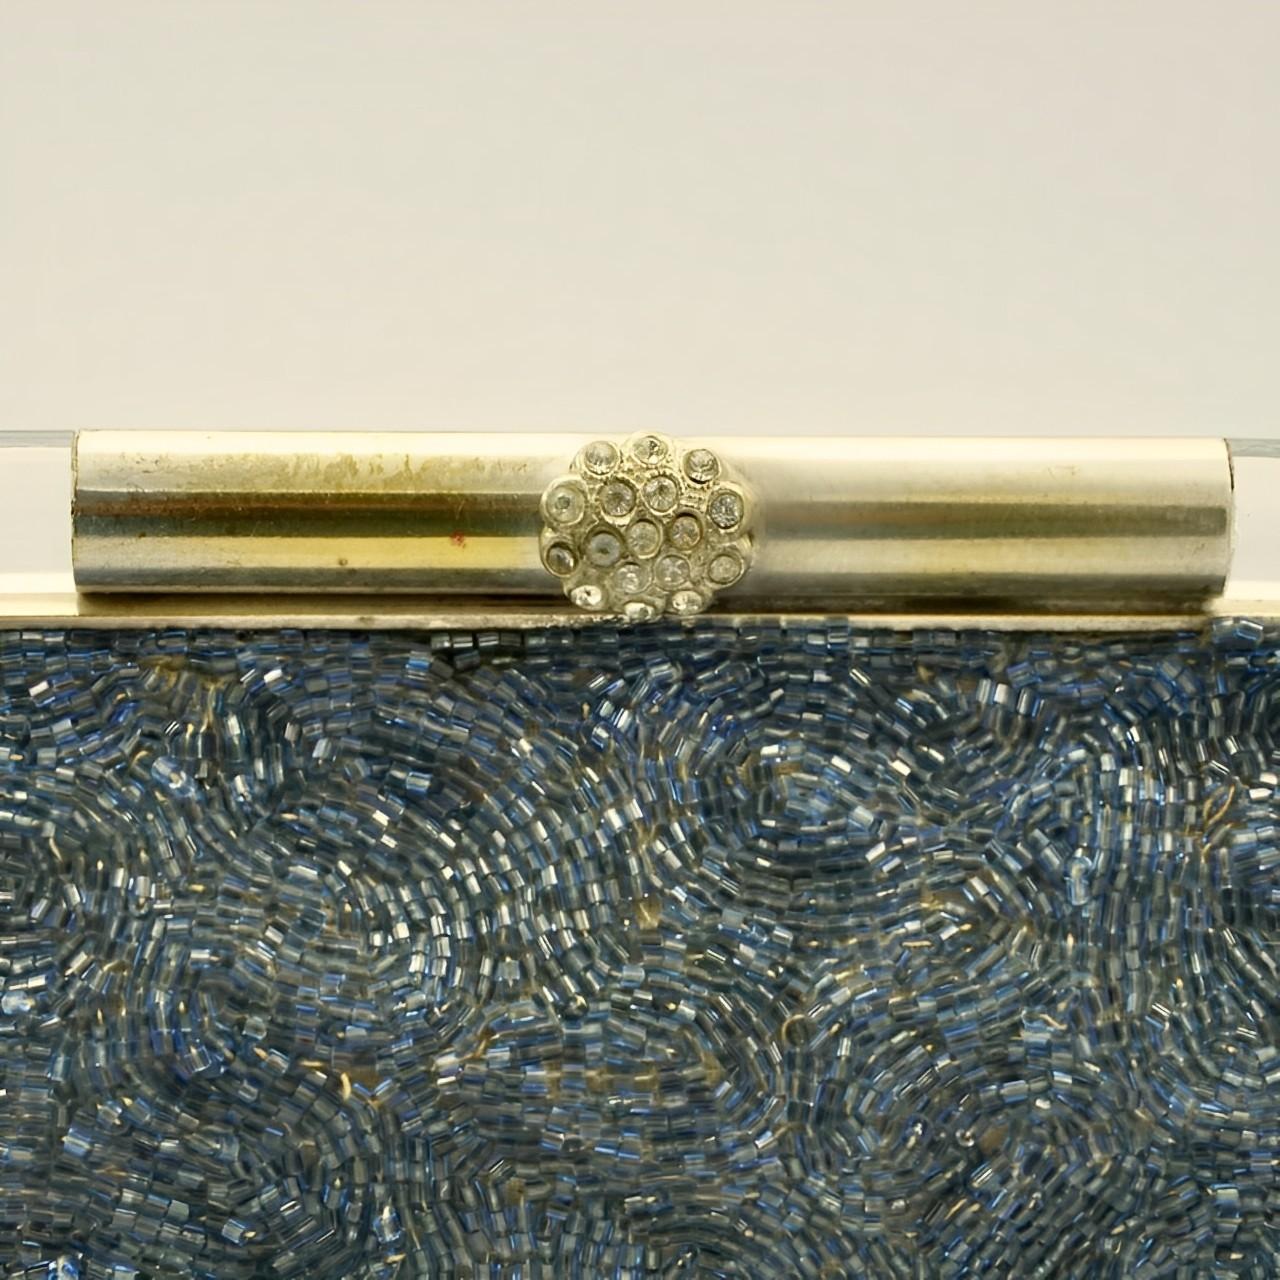 Hübsche mittelblaue Perlentasche von Josef mit einem ungewöhnlichen versilberten Verschluss aus klarem Lucite und Strasssteinen. Mit einer Breite von 17,5 cm / 6,8 Zoll an der Basis, einer Höhe von 11,5 cm / 4,5 Zoll und einer Riemenhöhe von 7,5 cm